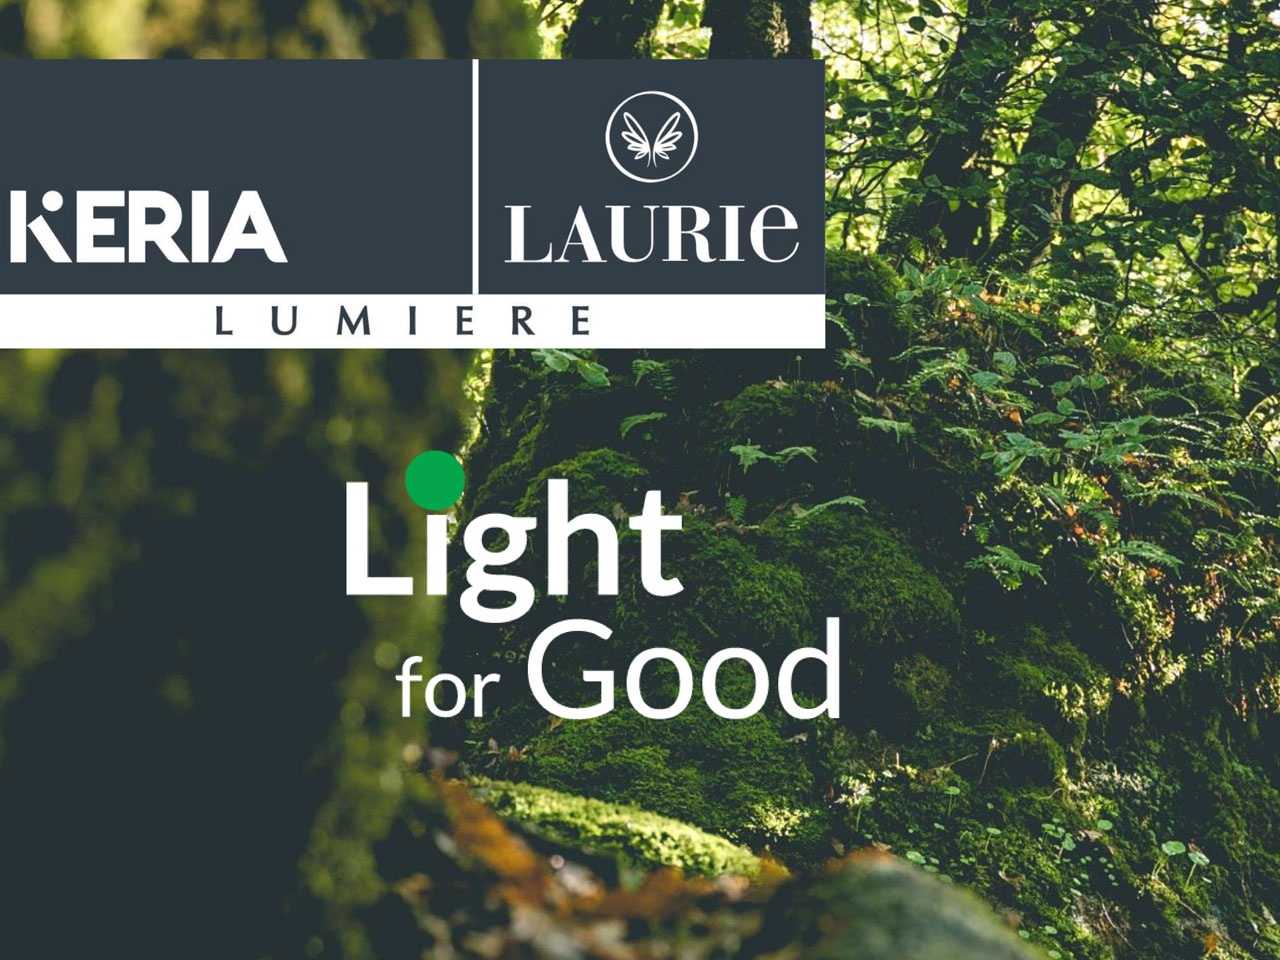 KERIA – LAURIE LUMIERE light for Good et Keria x EcoTree : Entreprise et Marque citoyenne !